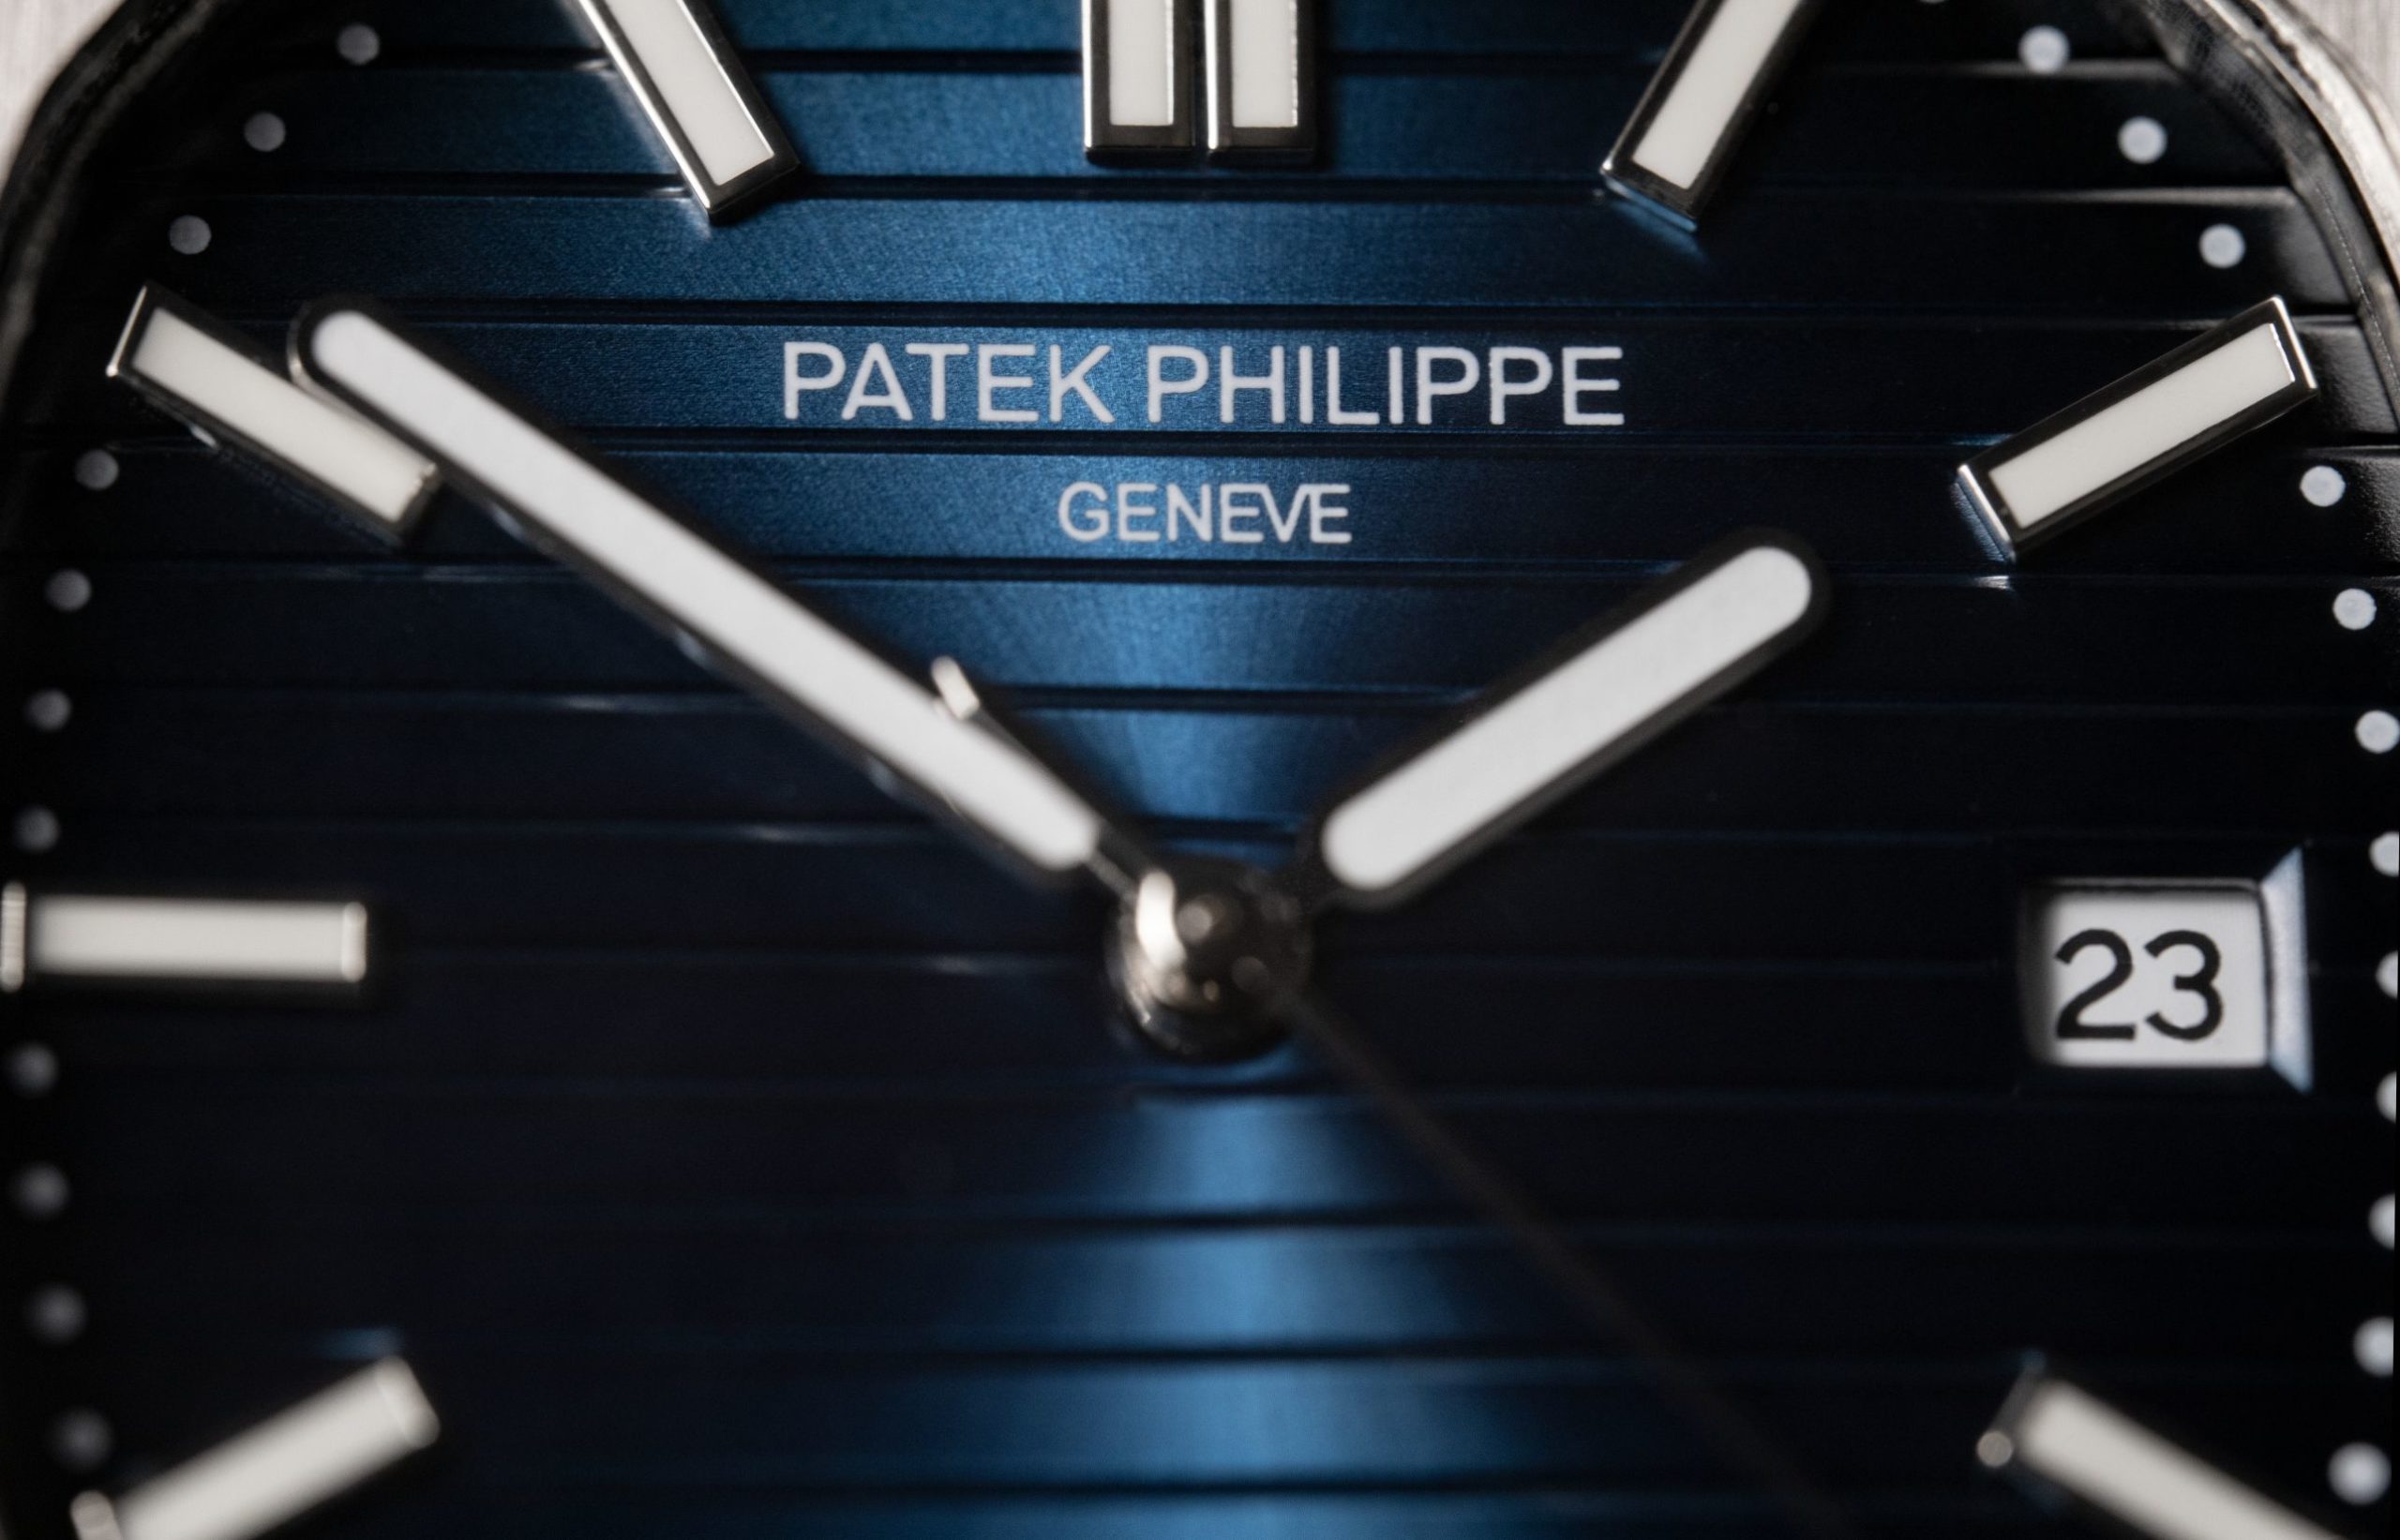 The Patek Philippe Nautilus 5711